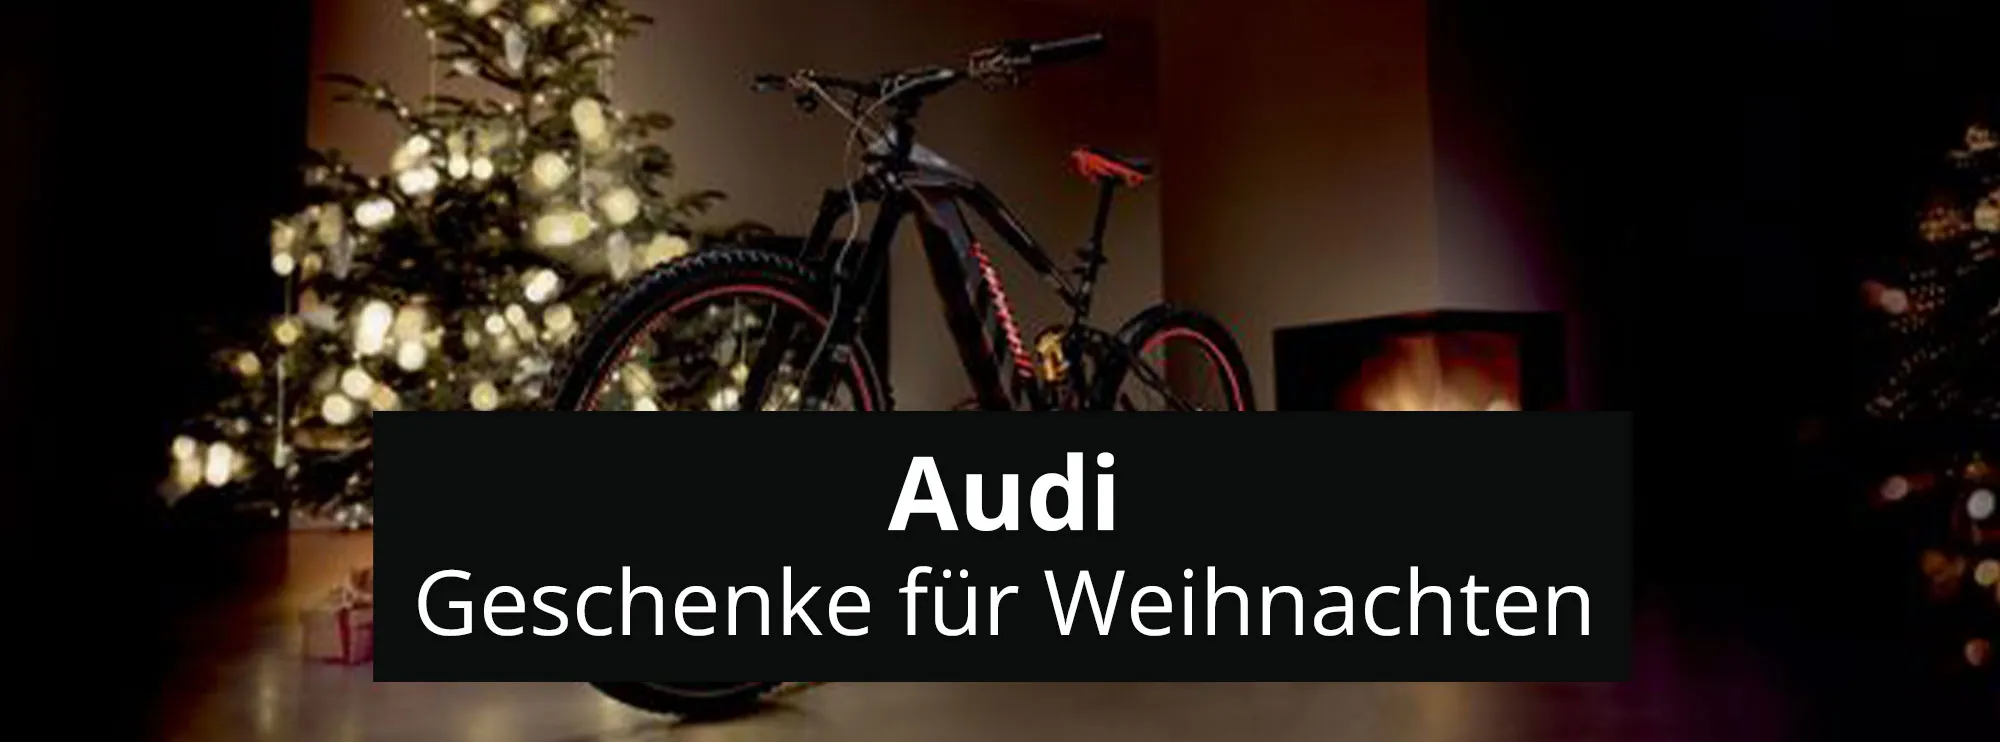 Audi geschenke fuer weihnachten header rosier onlineshop